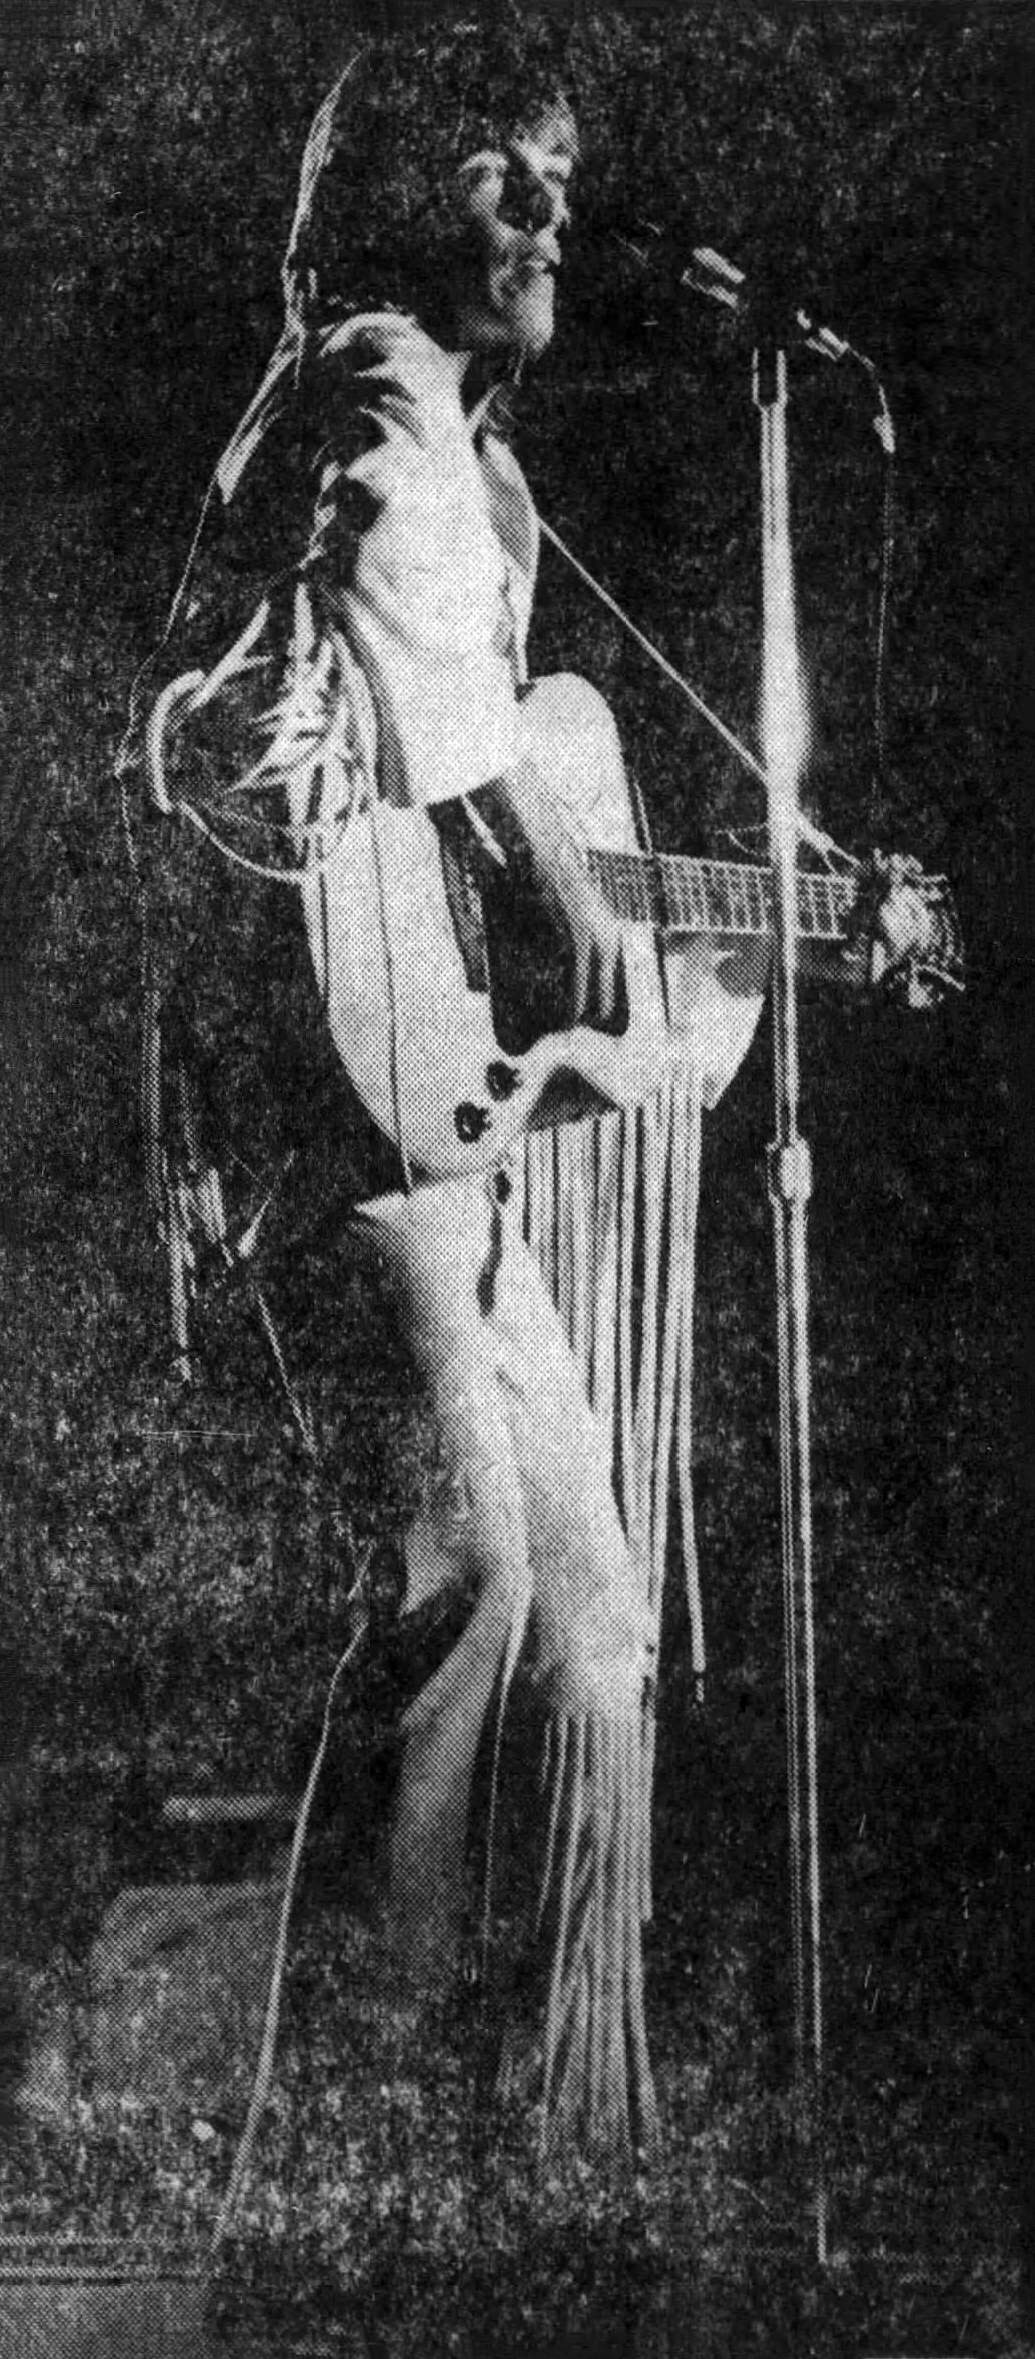 David Cassidy October 9, 1971